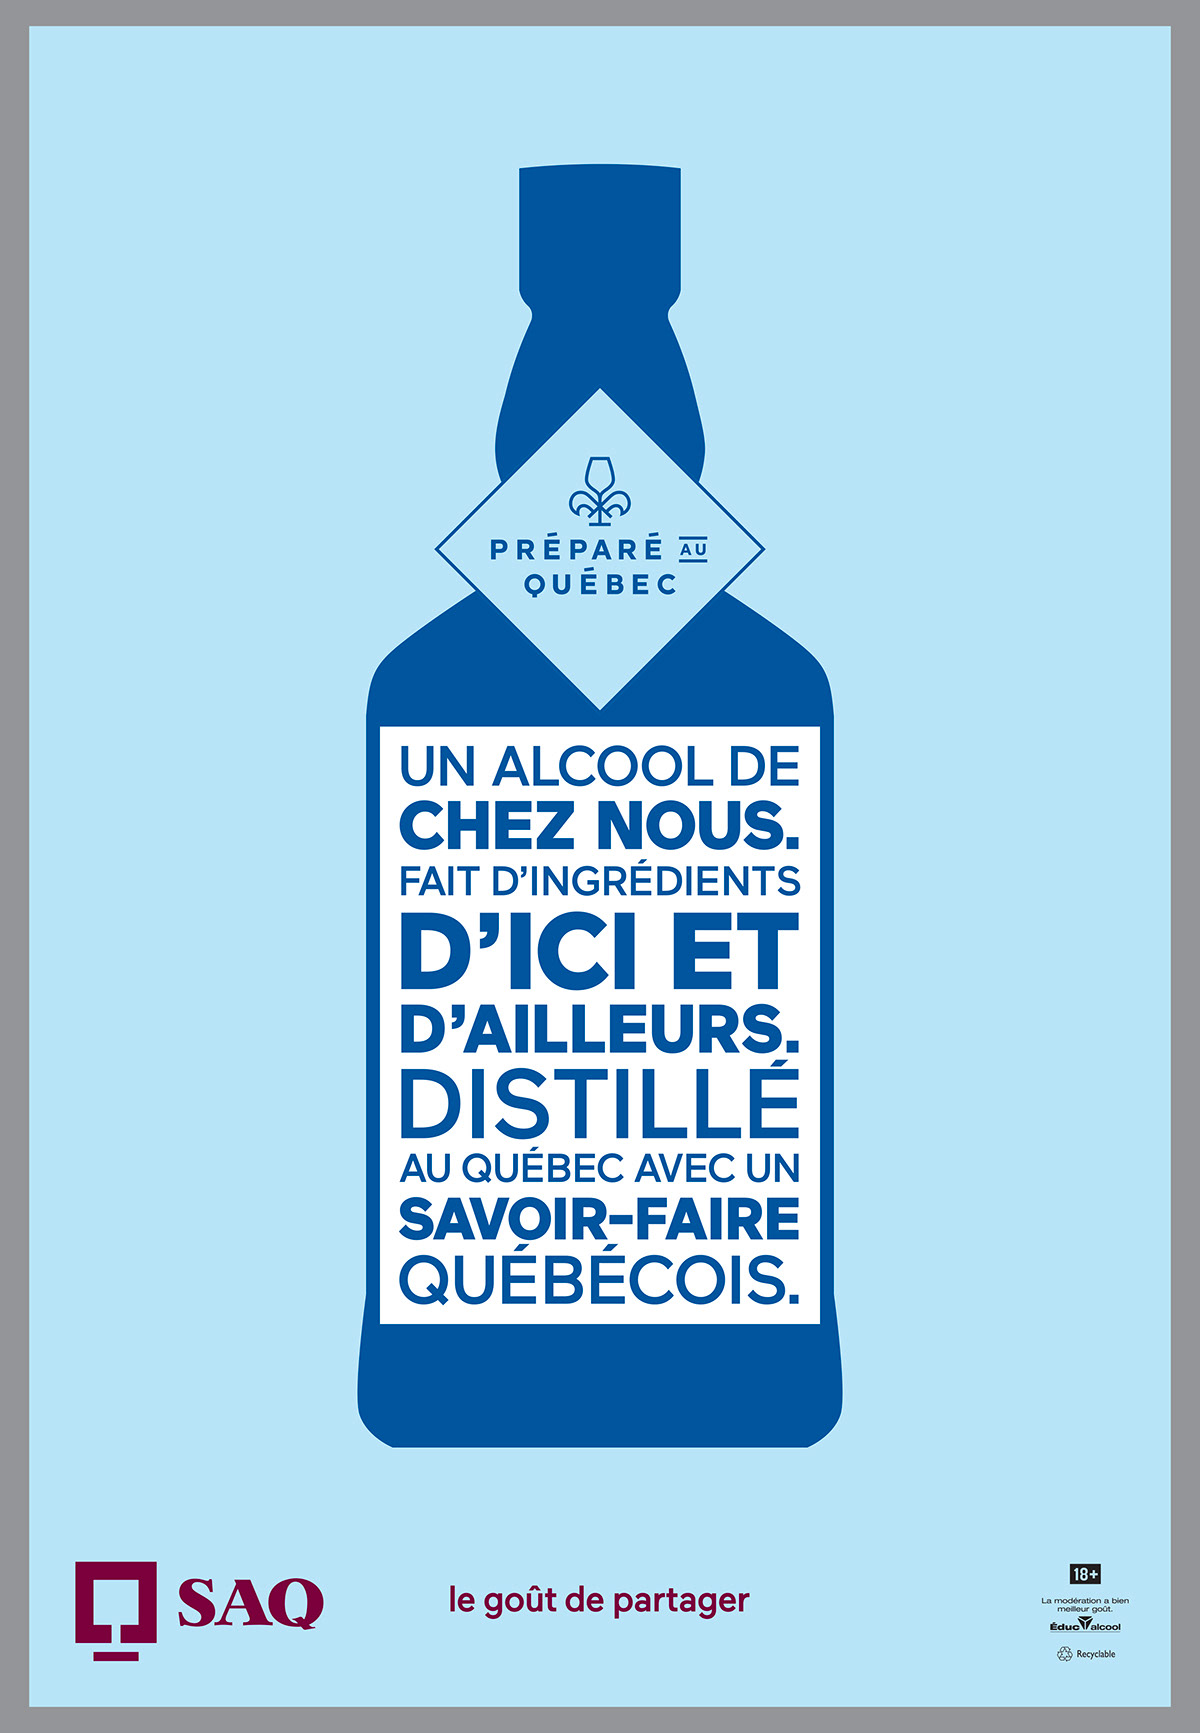 ads Advertising  alcohol art direction  campaign Outdoor print publicité wine